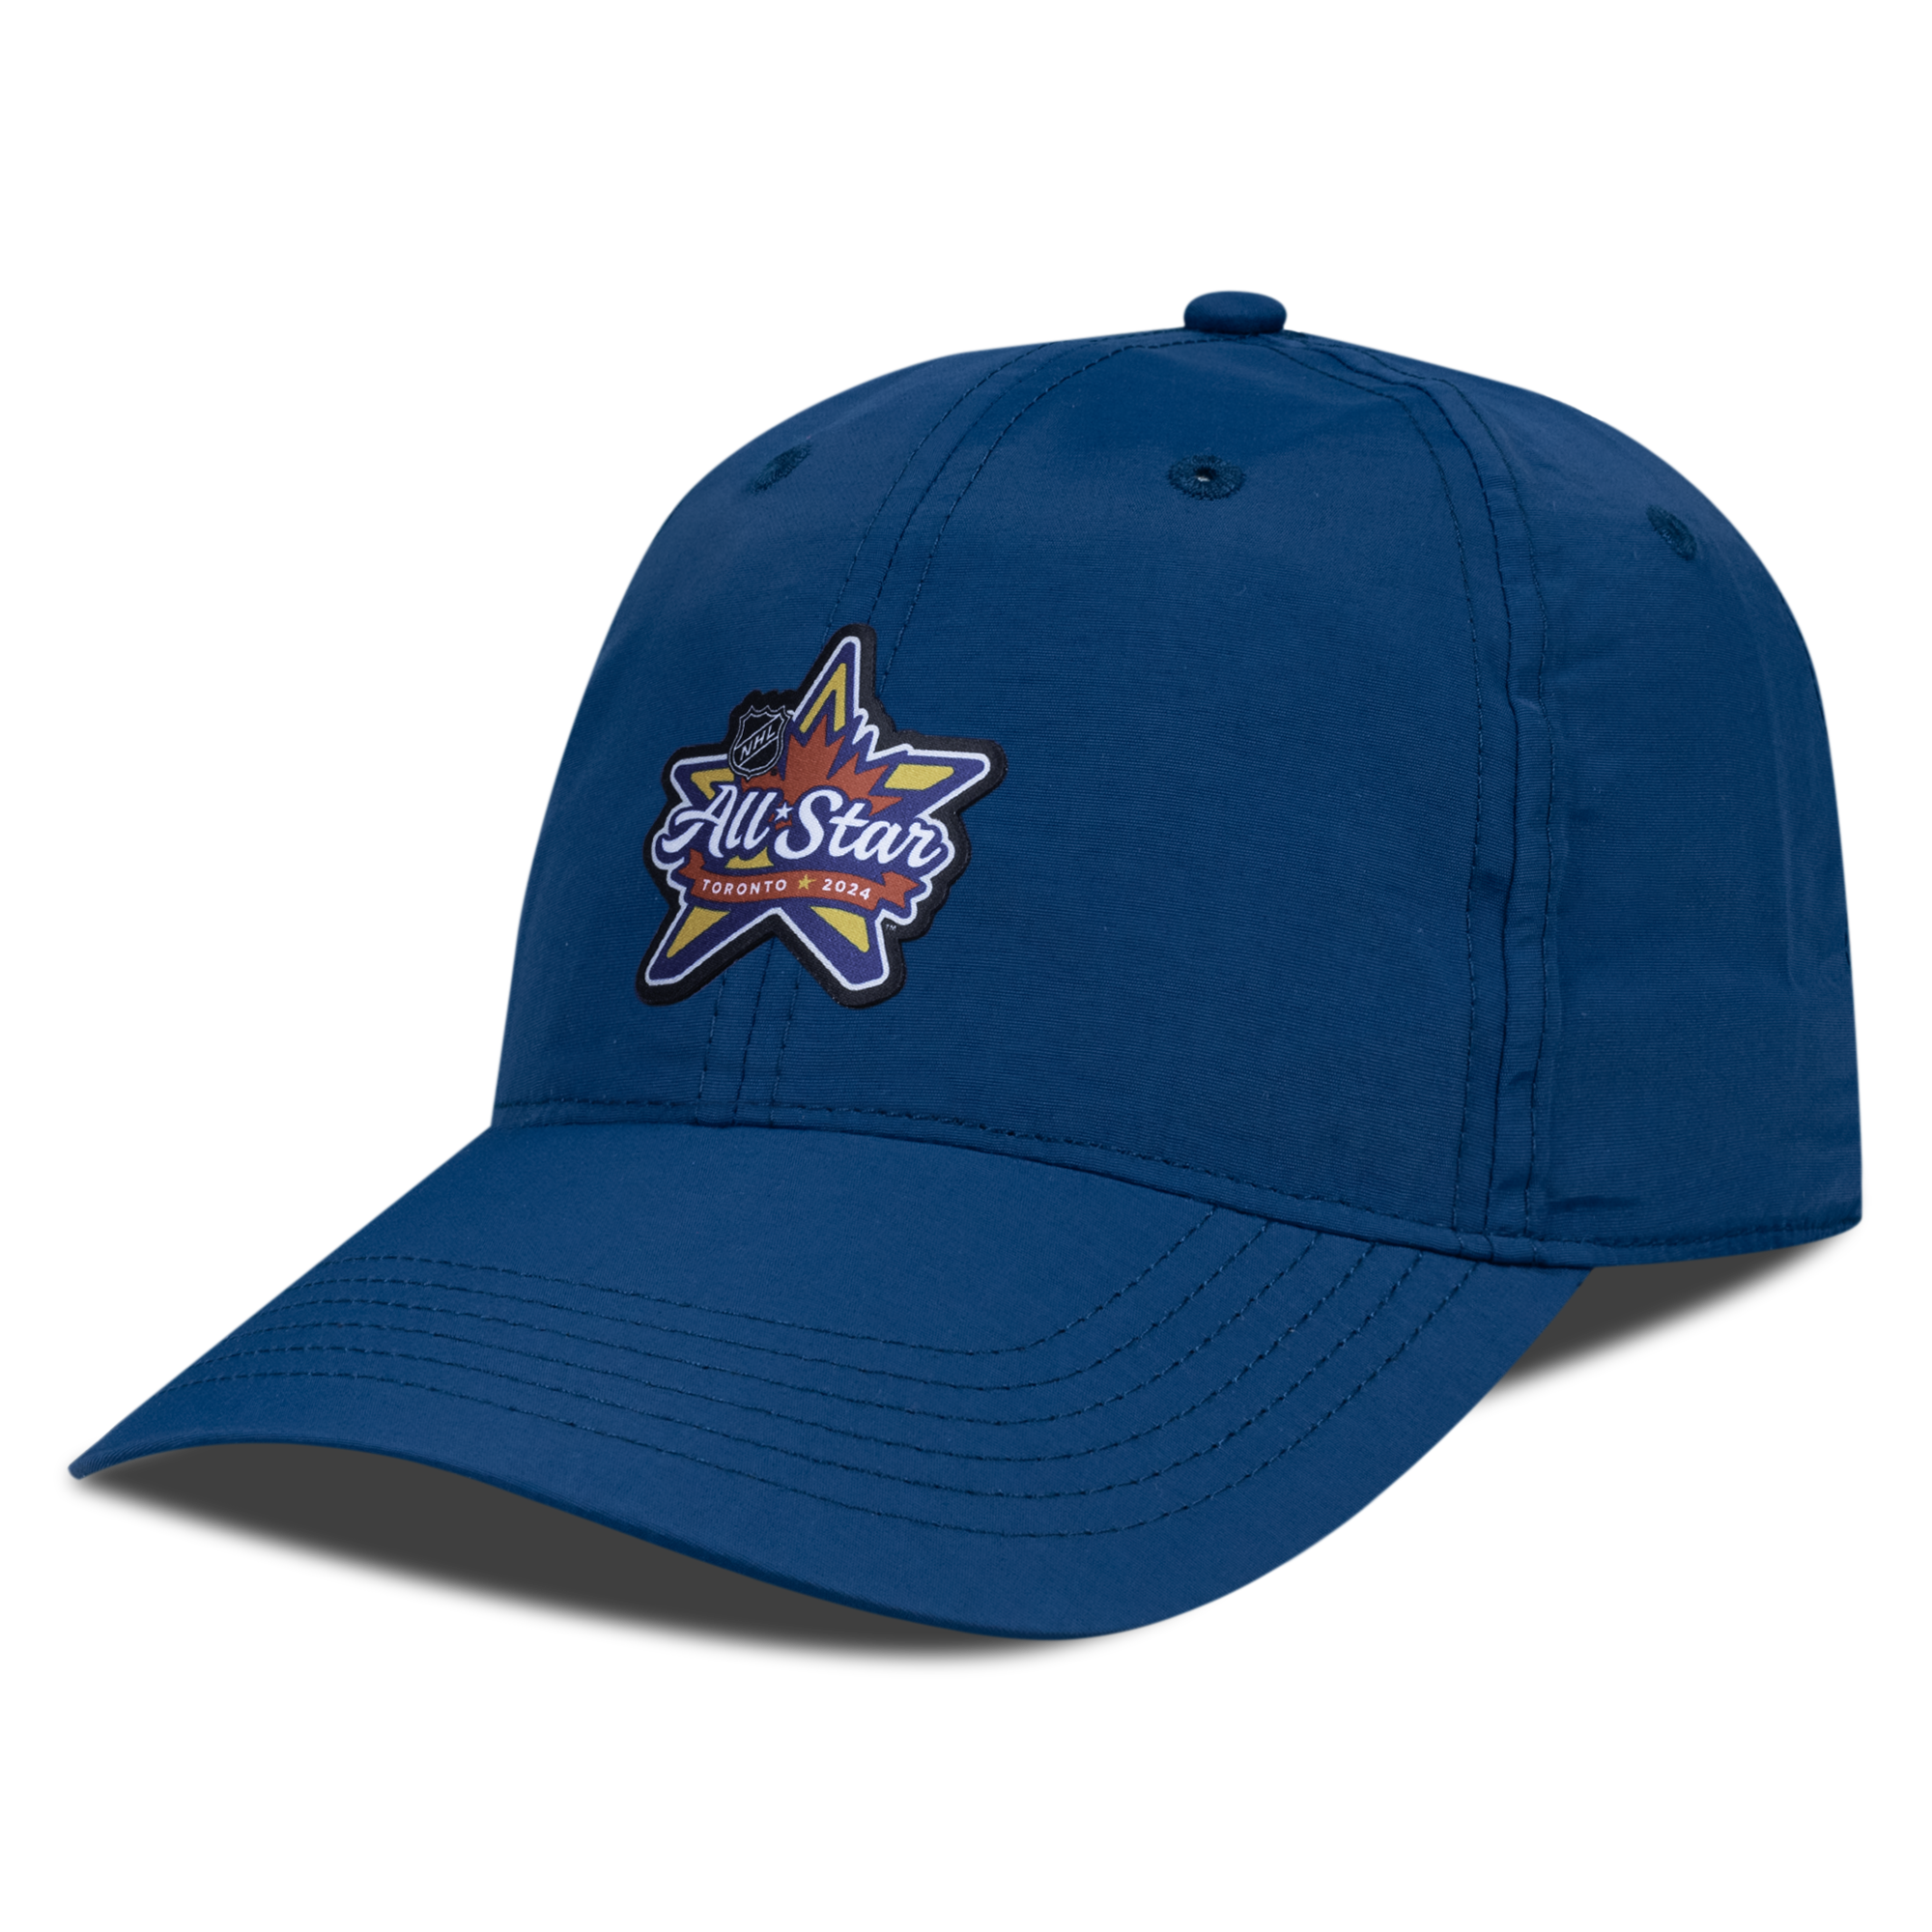 2024 NHL All Star Levelwear Crest Adjustable Hat